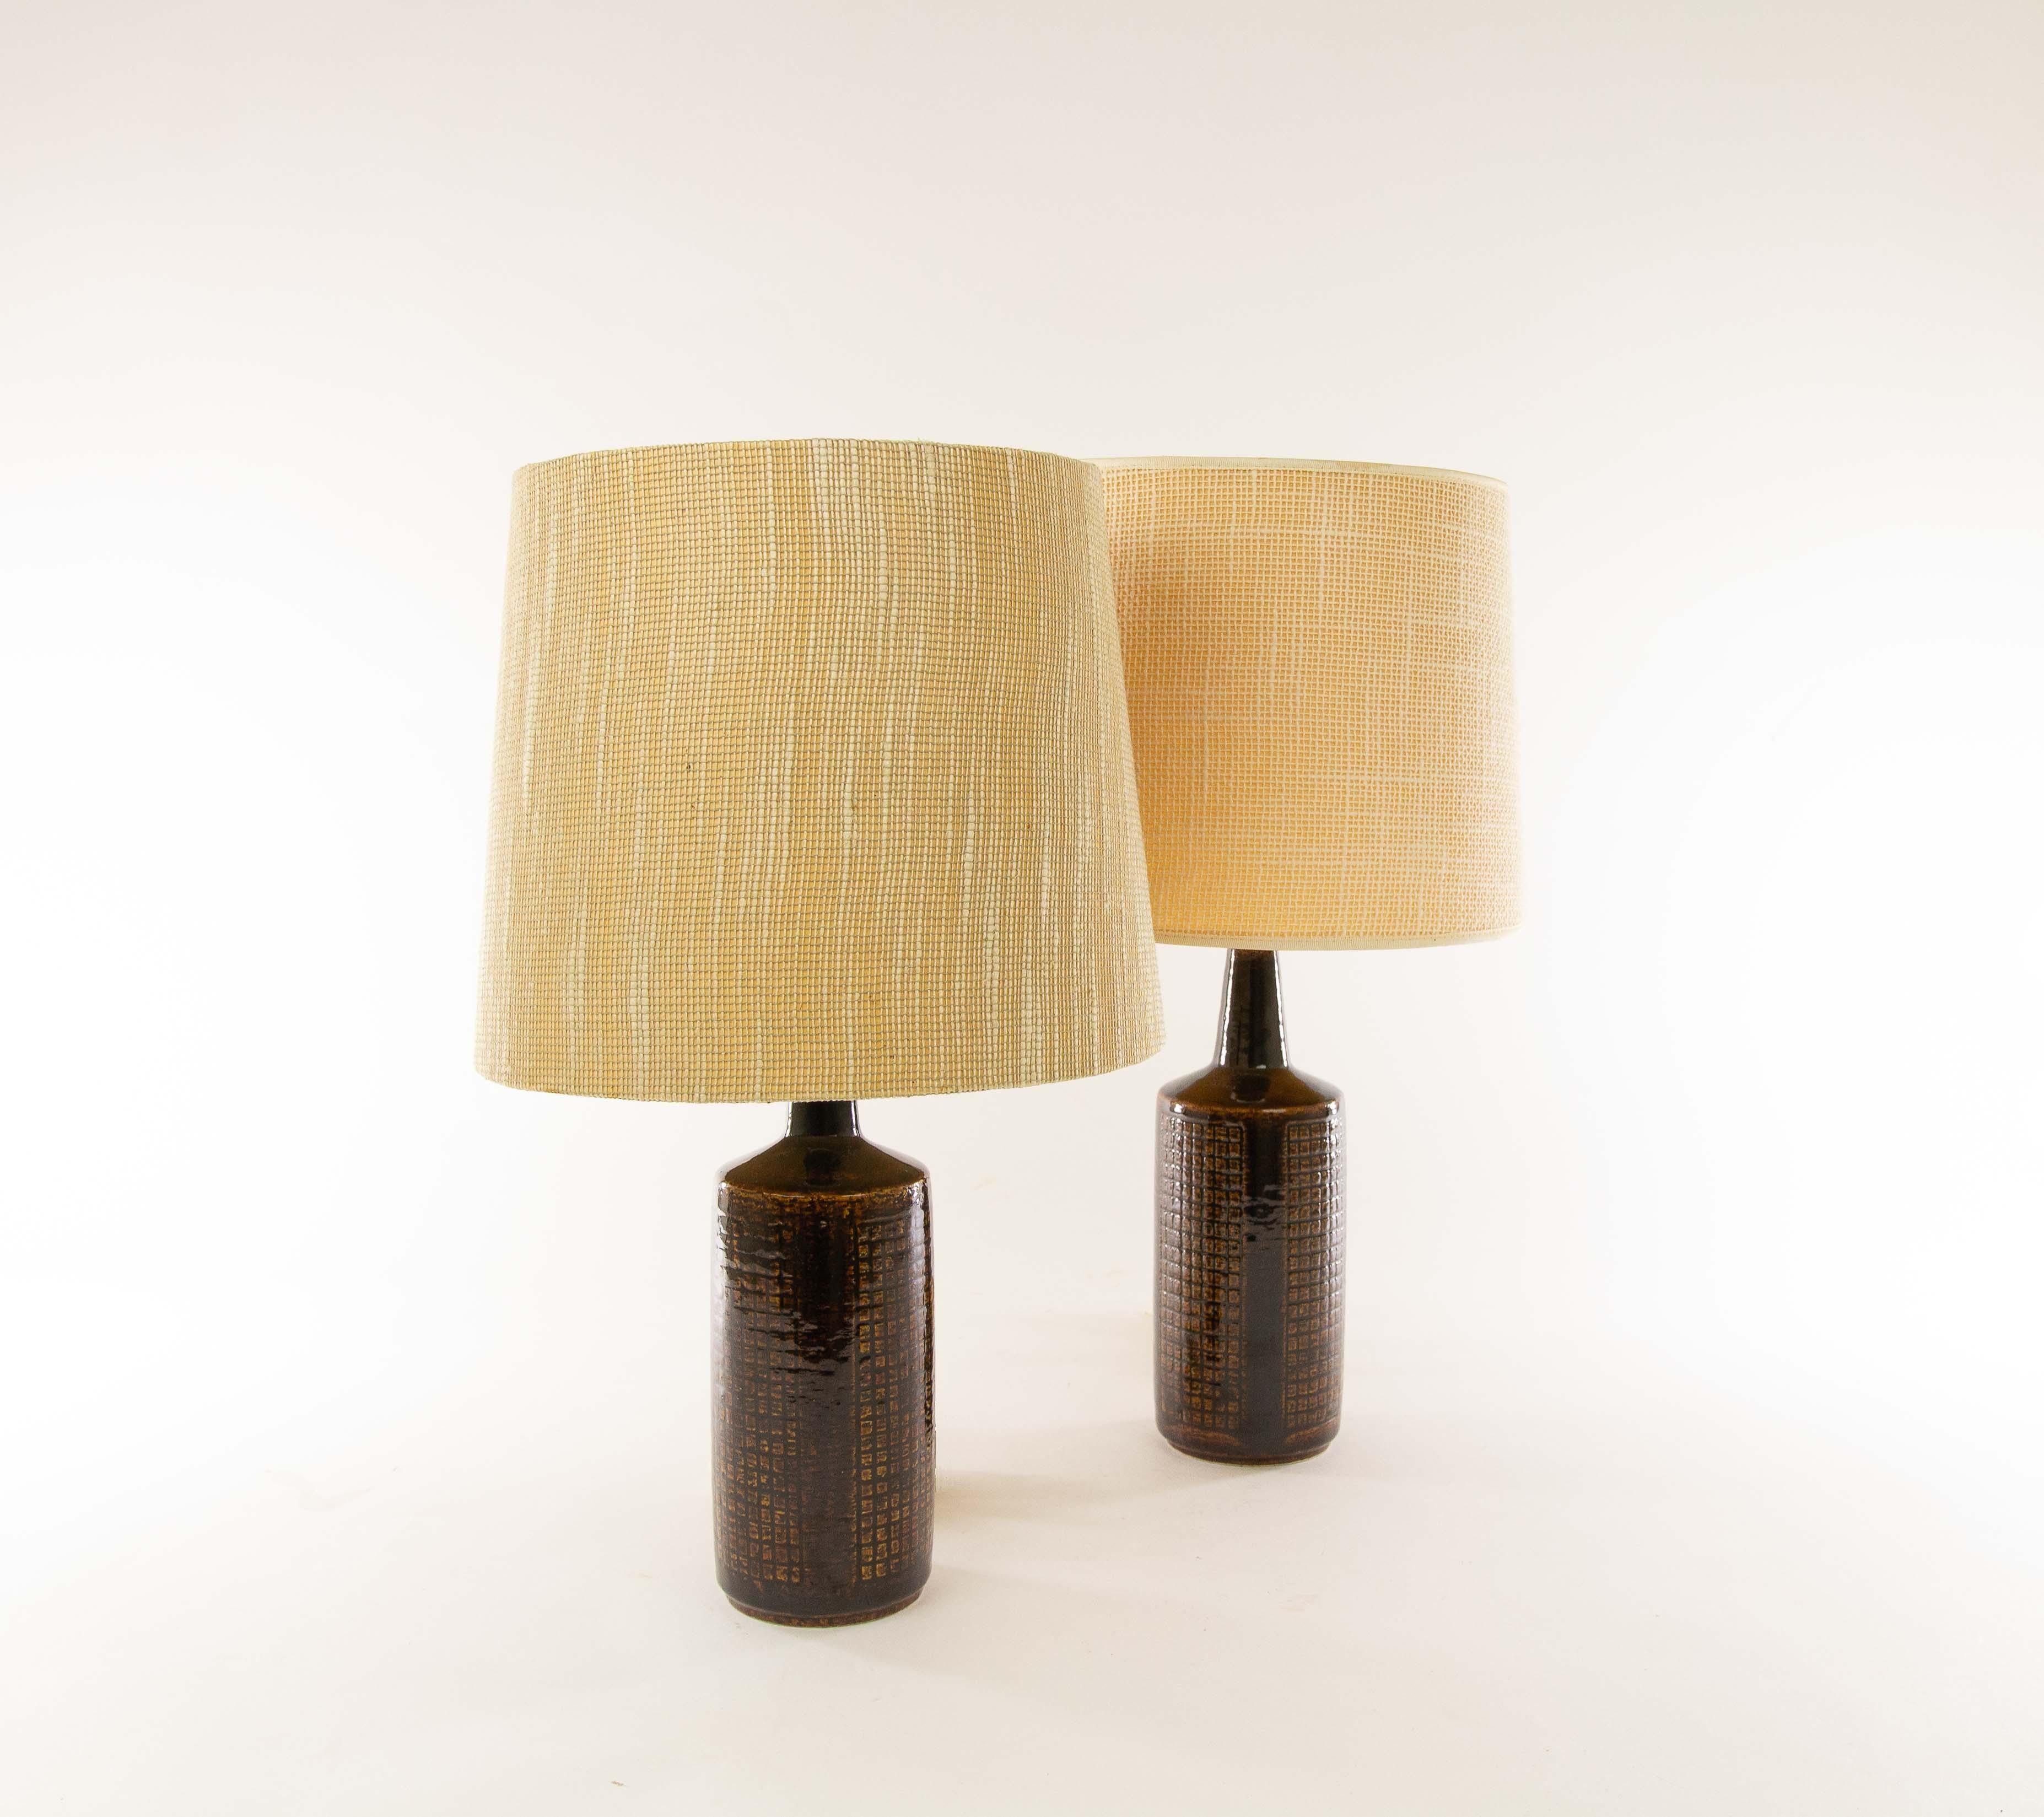 Paire de lampes de table DL/30 réalisées par Annelise et Per Linnemann-Schmidt pour Palshus dans les années 1960. 

Les deux pièces sont de couleur marron. Bien que les deux pièces soient très semblables, elles ne sont pas exactement identiques. Il